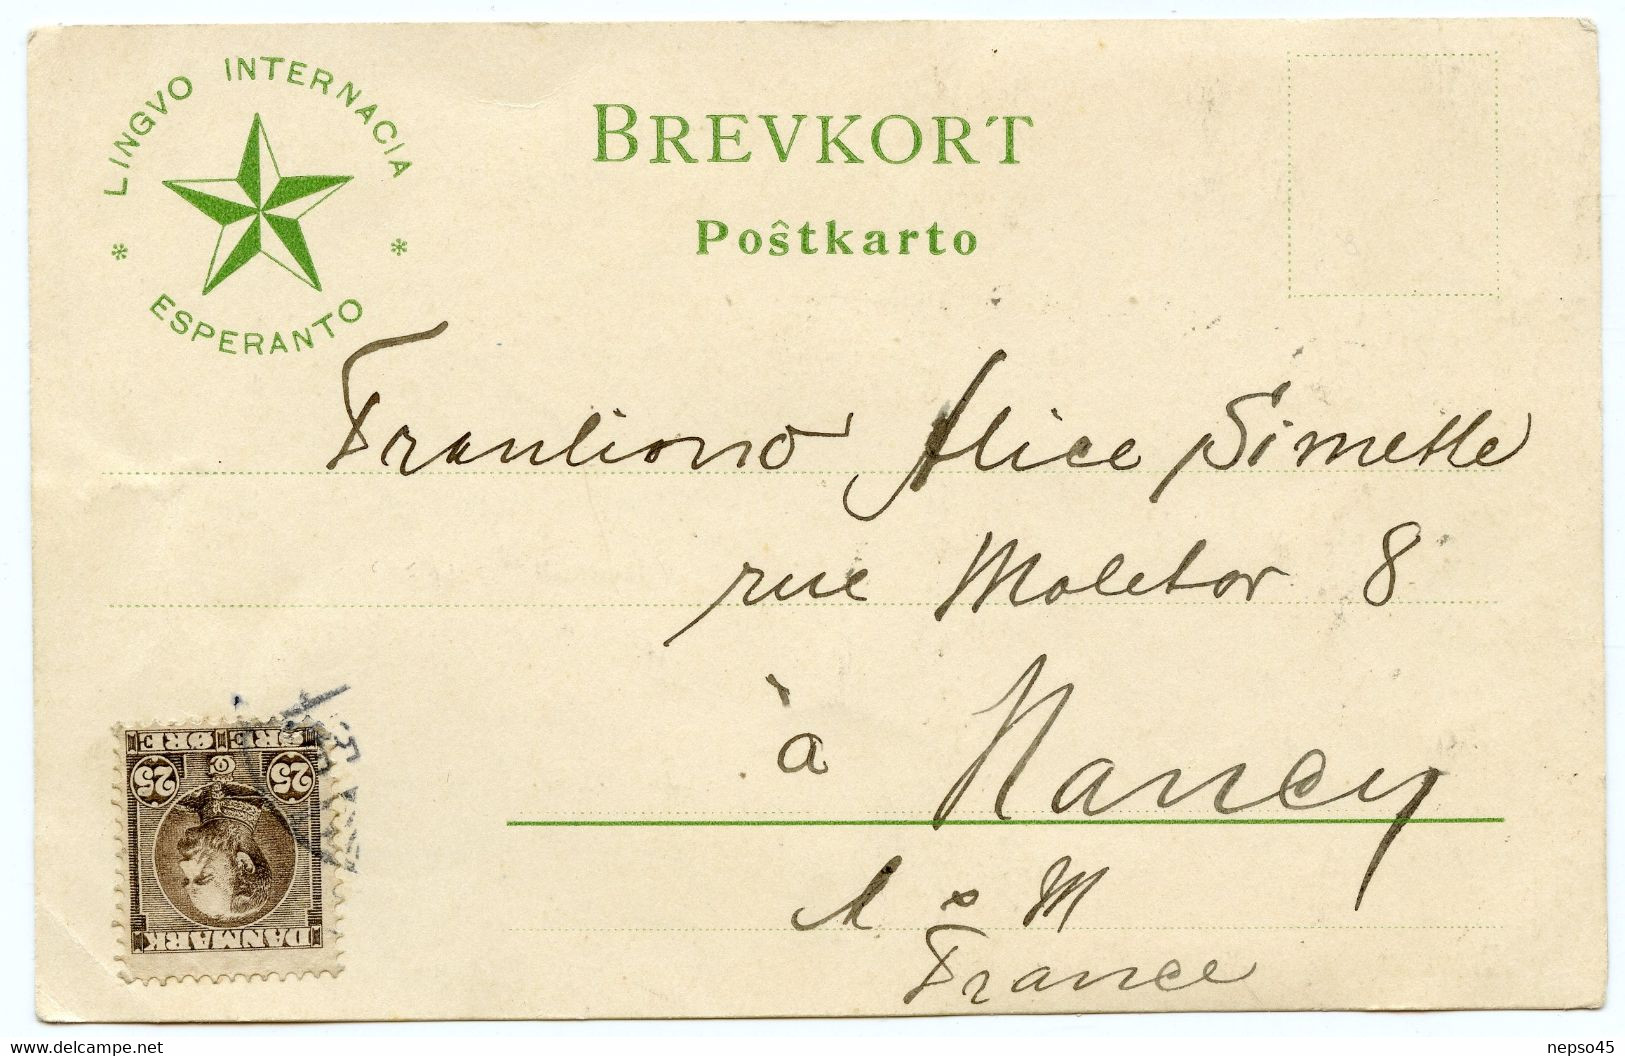 Danemark.esperanto.portrait photographique d'un membre contrecollé sur la carte.circulé le 8-6-1906.